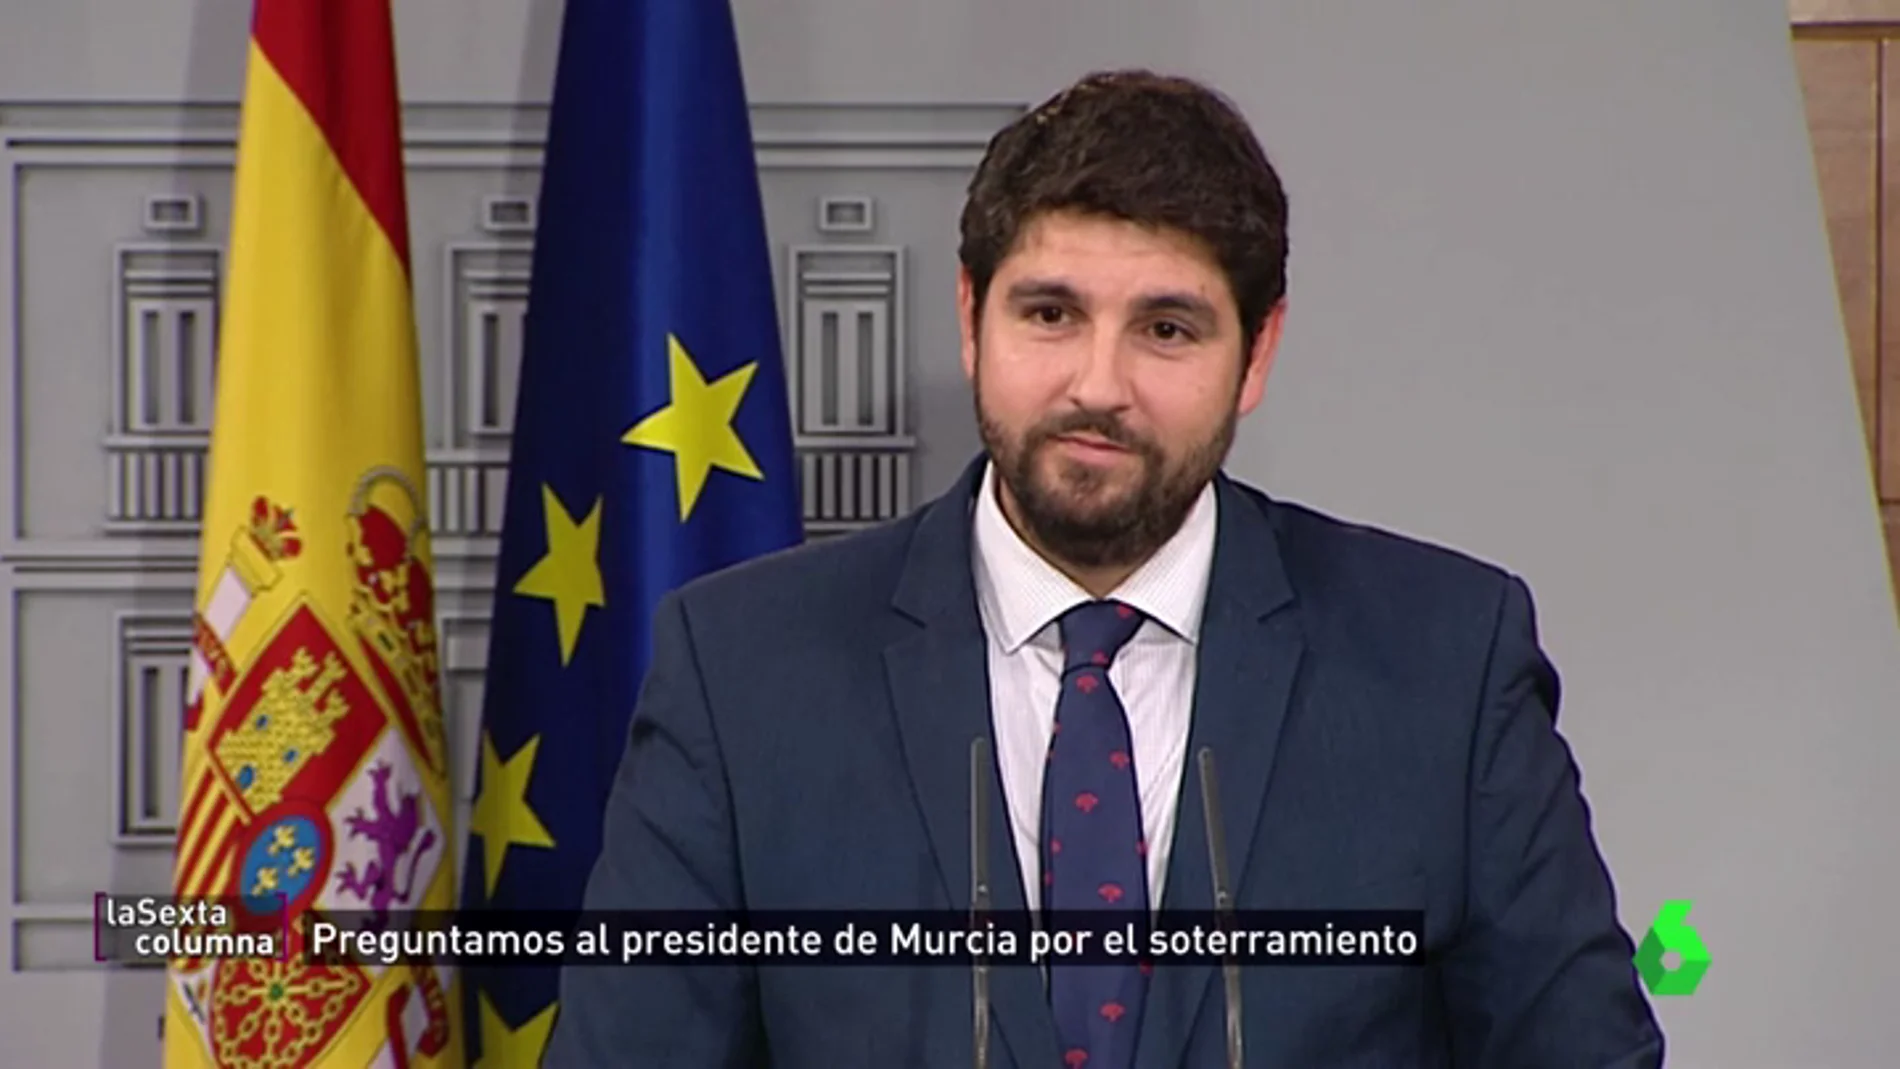 El presidente de Murcia responde a las acusaciones de electoralismo por el AVE: "Mi prioridad es que llegue porque es dinero"